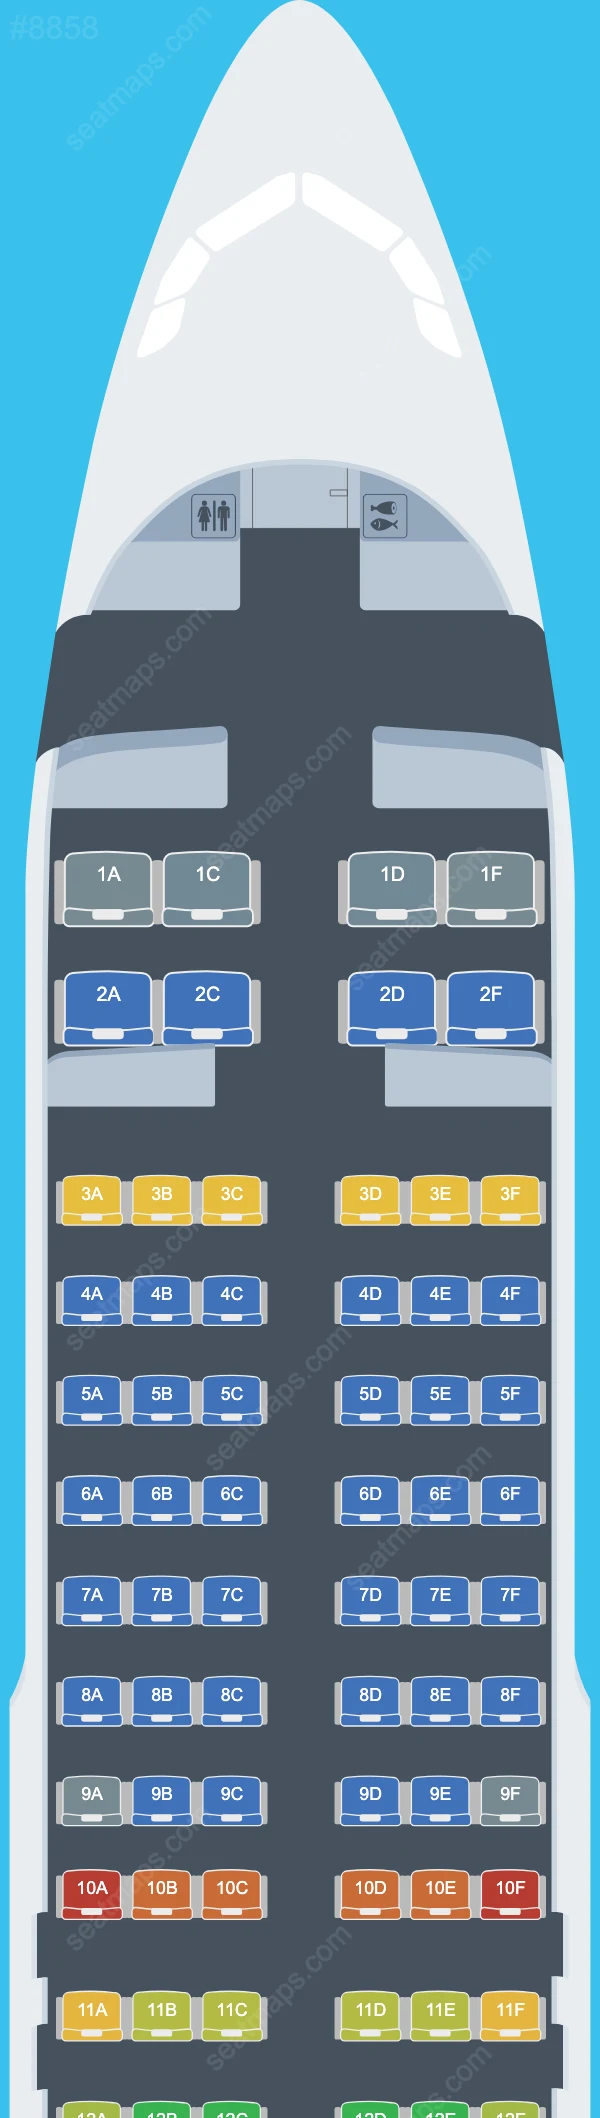 Air Travel Airbus A320 Seat Maps A320-200 V.1